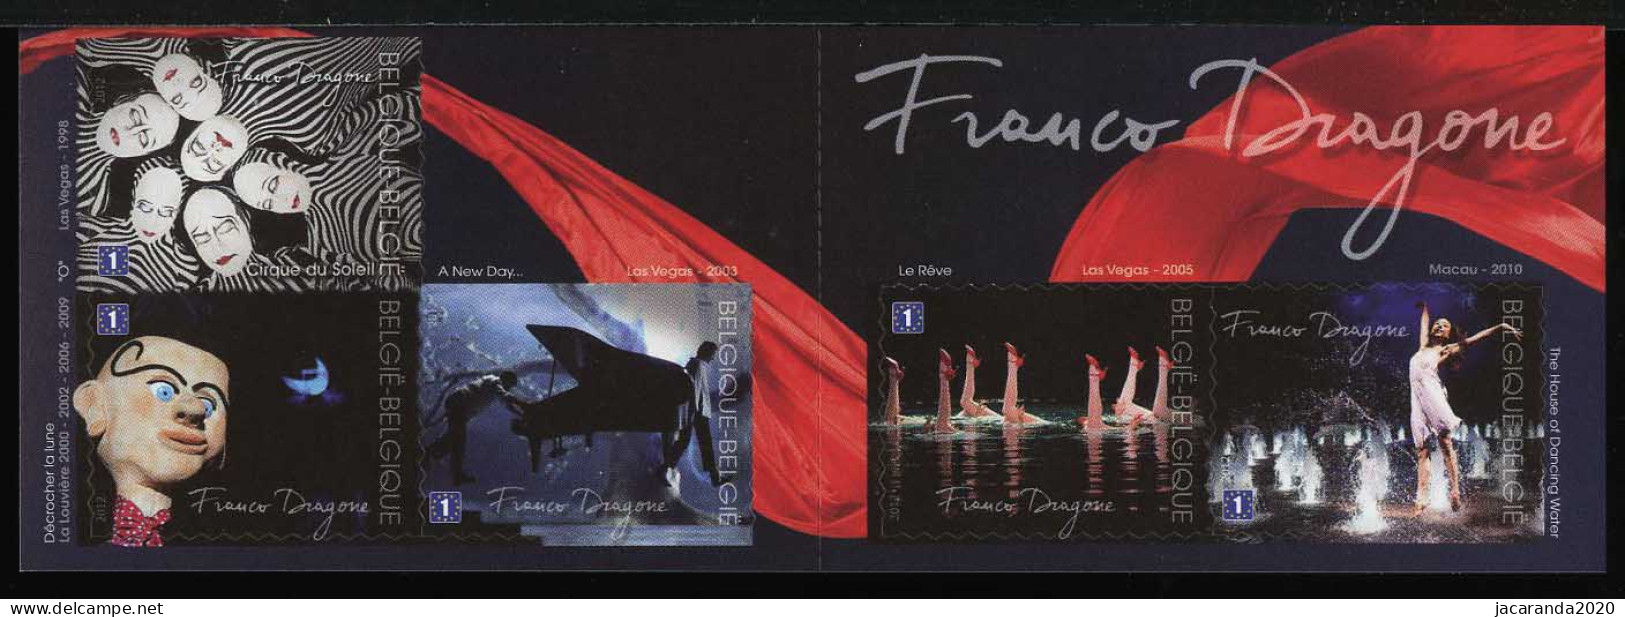 België B127 - Franco Dragone - Cirque Du Soleil - 1E - Zelfklevend - Autocollants - 2012 - 1997-… Dauerhafte Gültigkeit [B]